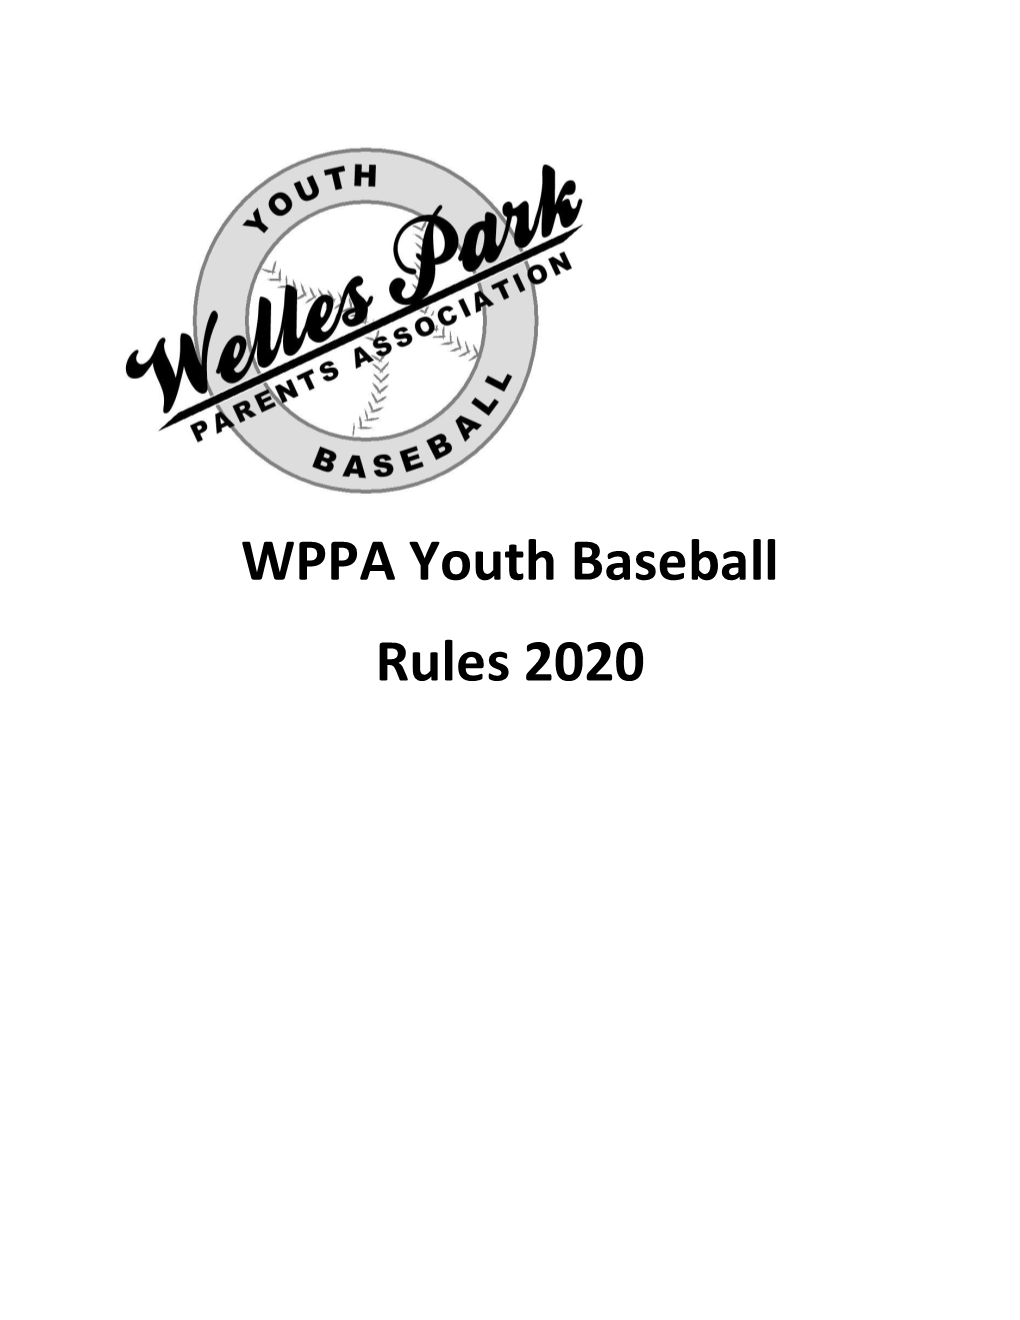 WPPA Youth Baseball Rules 2020